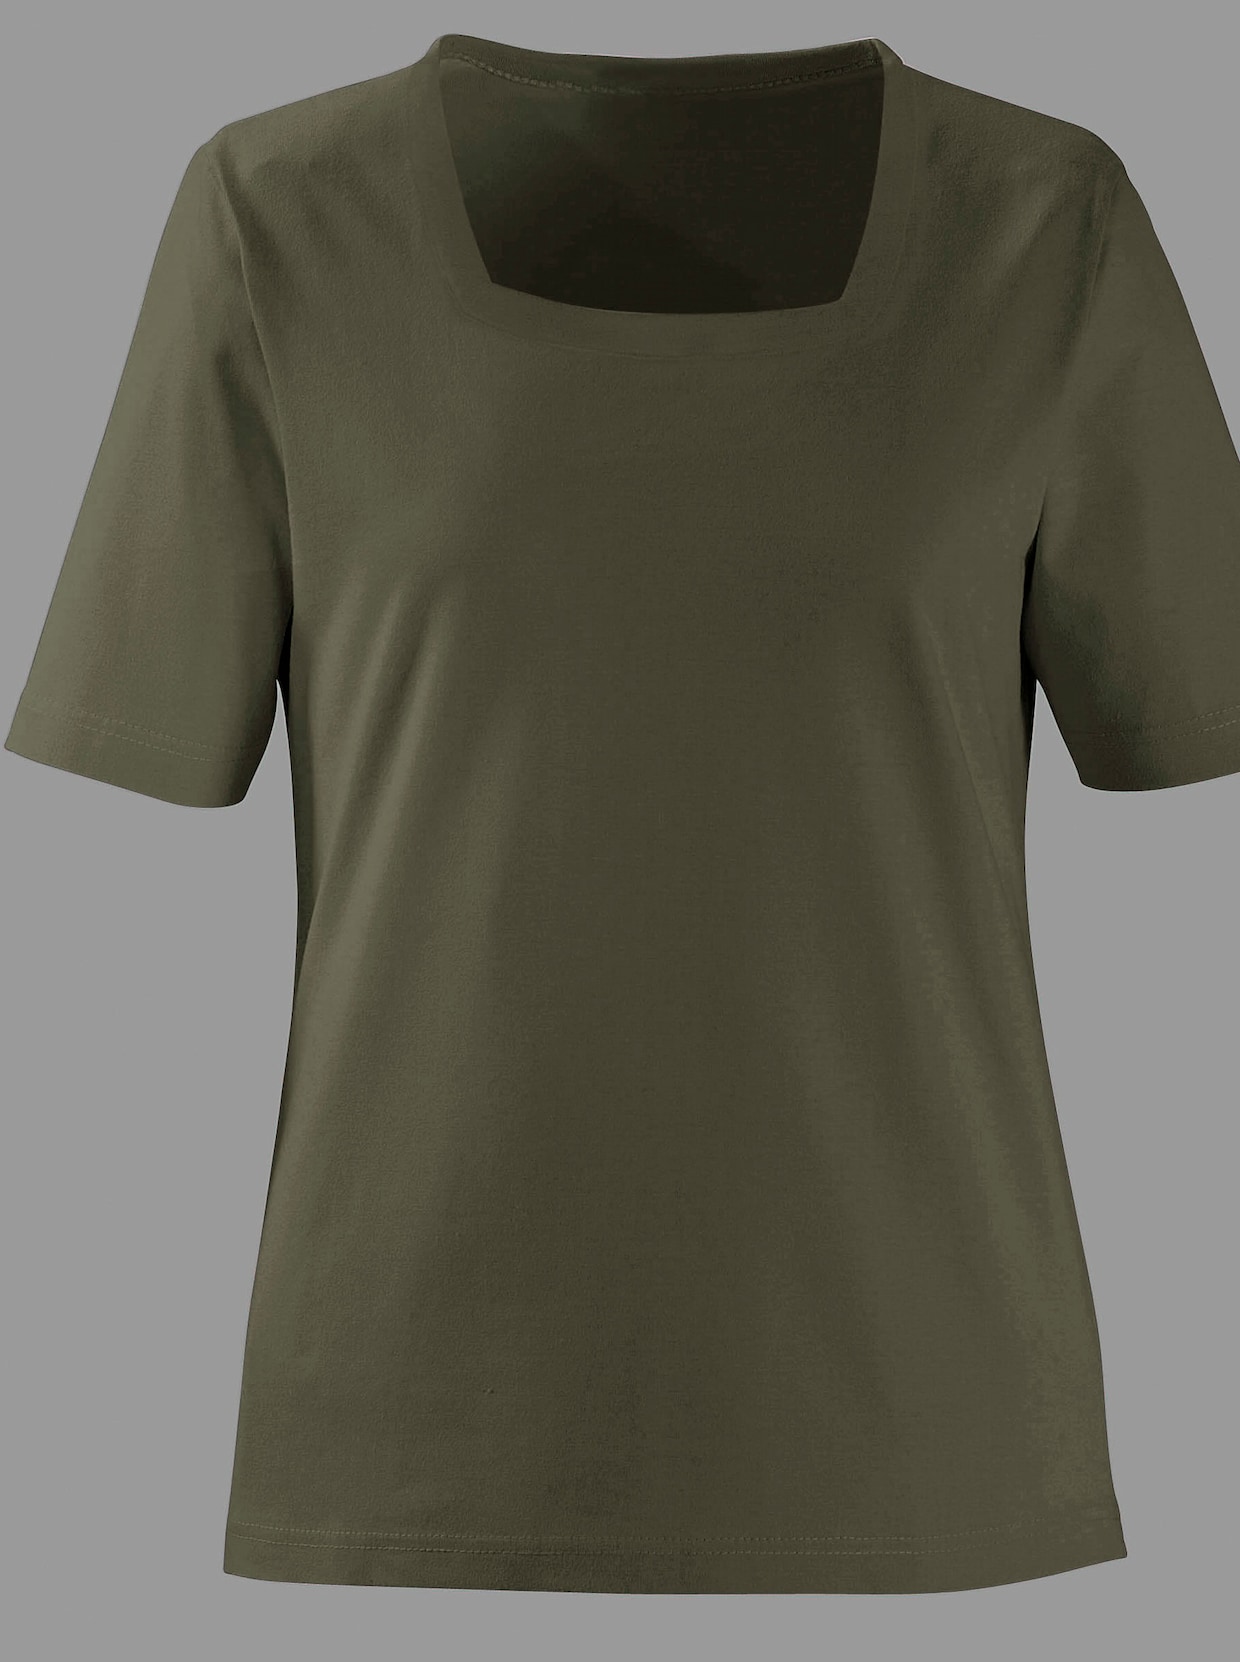 Tričko s krátkým rukávem - olivová